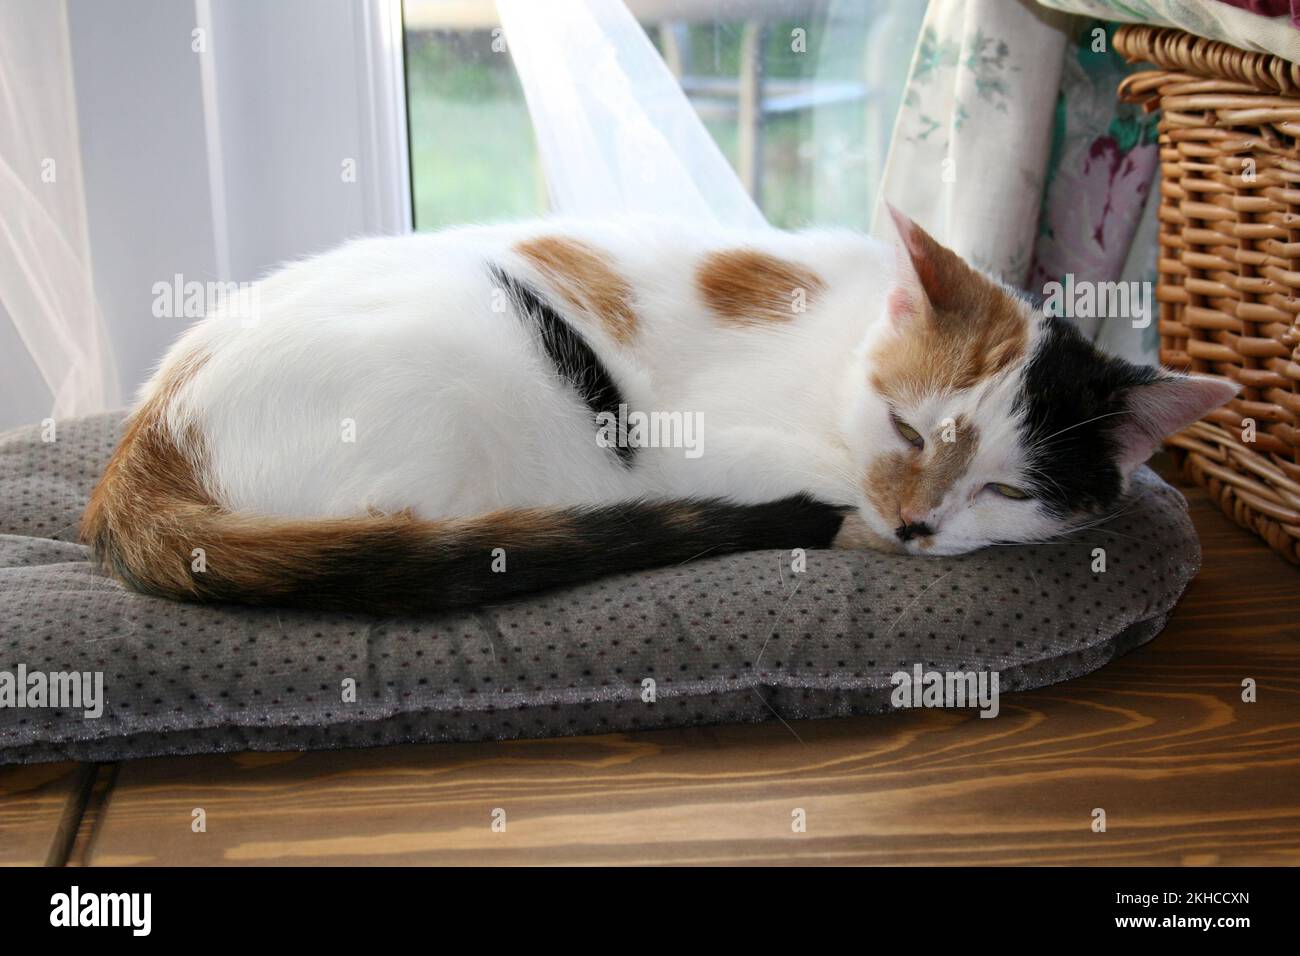 tortoiseshell black and white cat sleeping peacefully on cushion Stock Photo